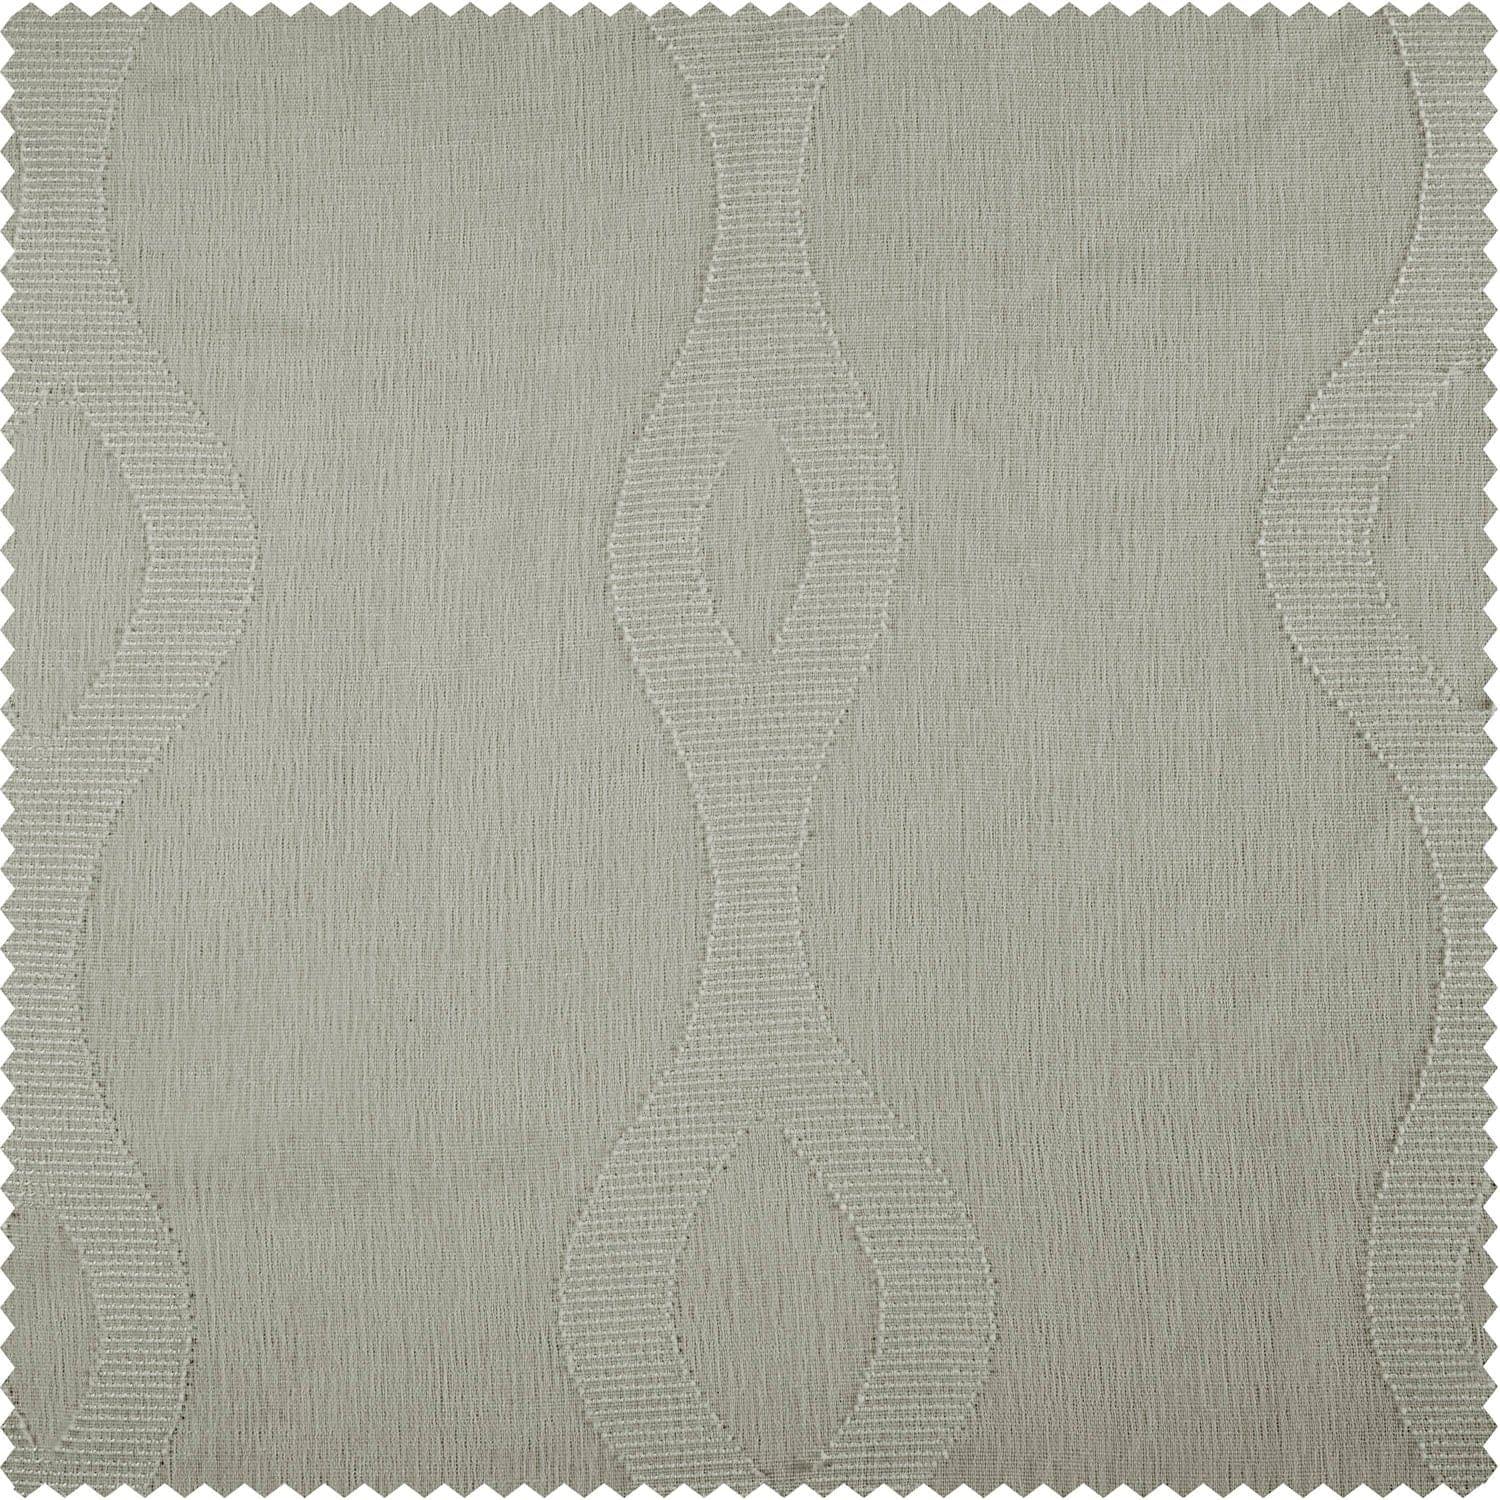 Vega White Patterned Faux Linen Sheer Curtain